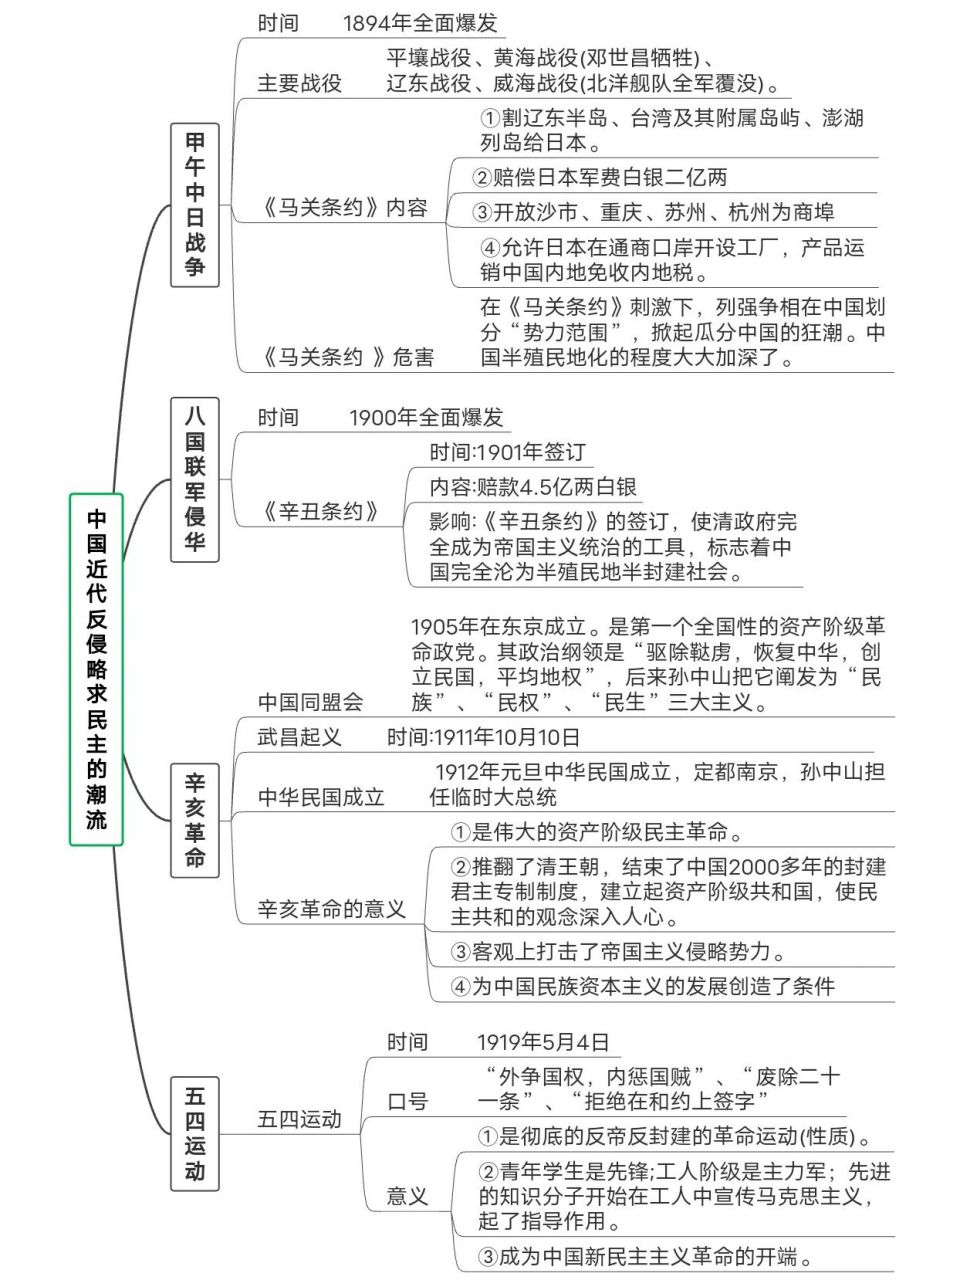 思维图——中国近代反侵略求民主的潮流 思维导图带你学习中国近代反